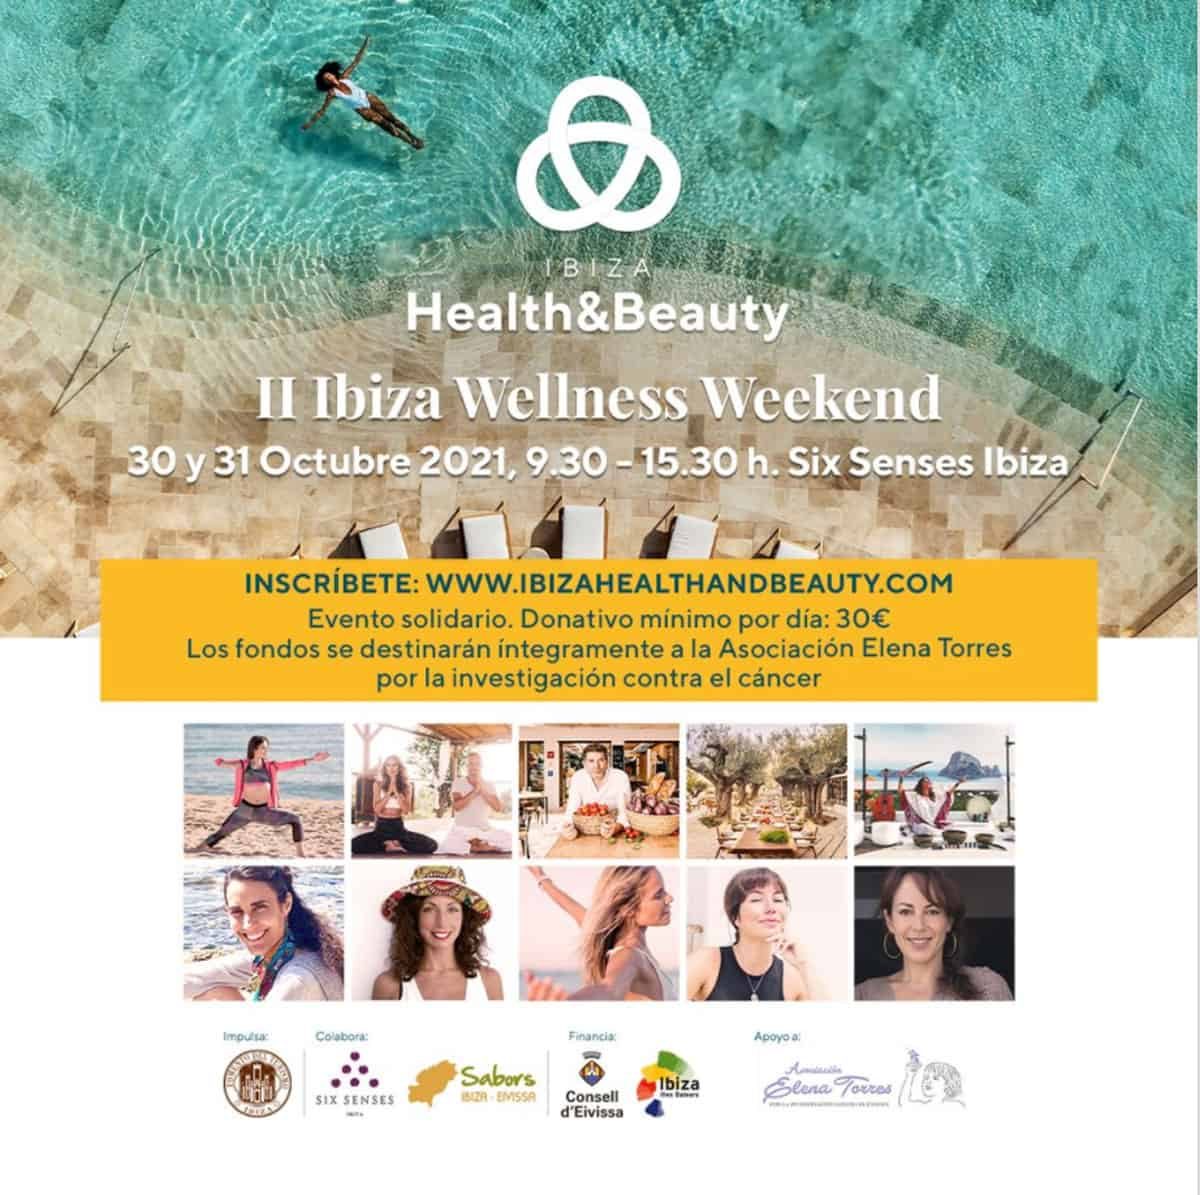 ii-ibiza-wellness-weekend-six-senses-ibiza-2021-welcometoibiza